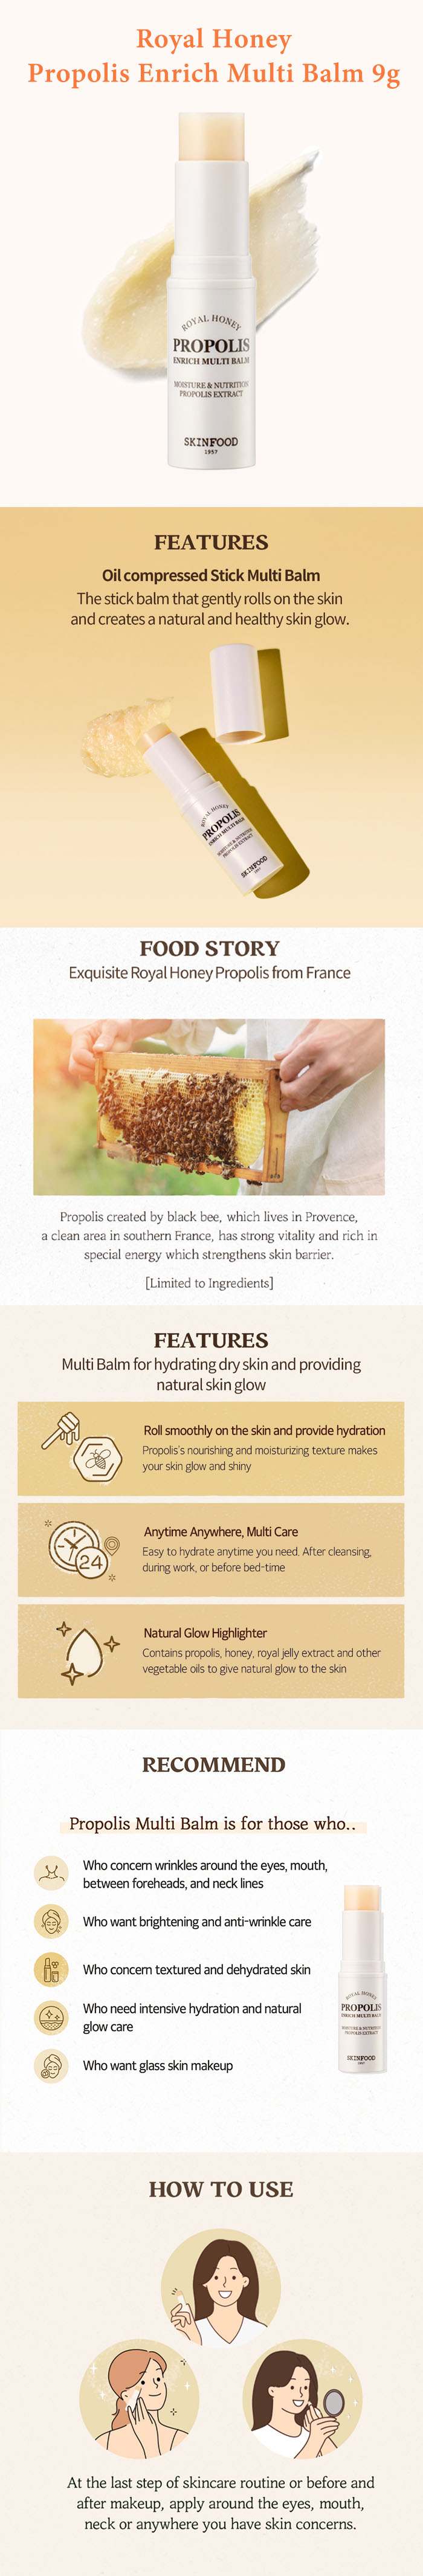 [SKINFOOD] Royal Honey Propolis Enrich Multi Balm 9g